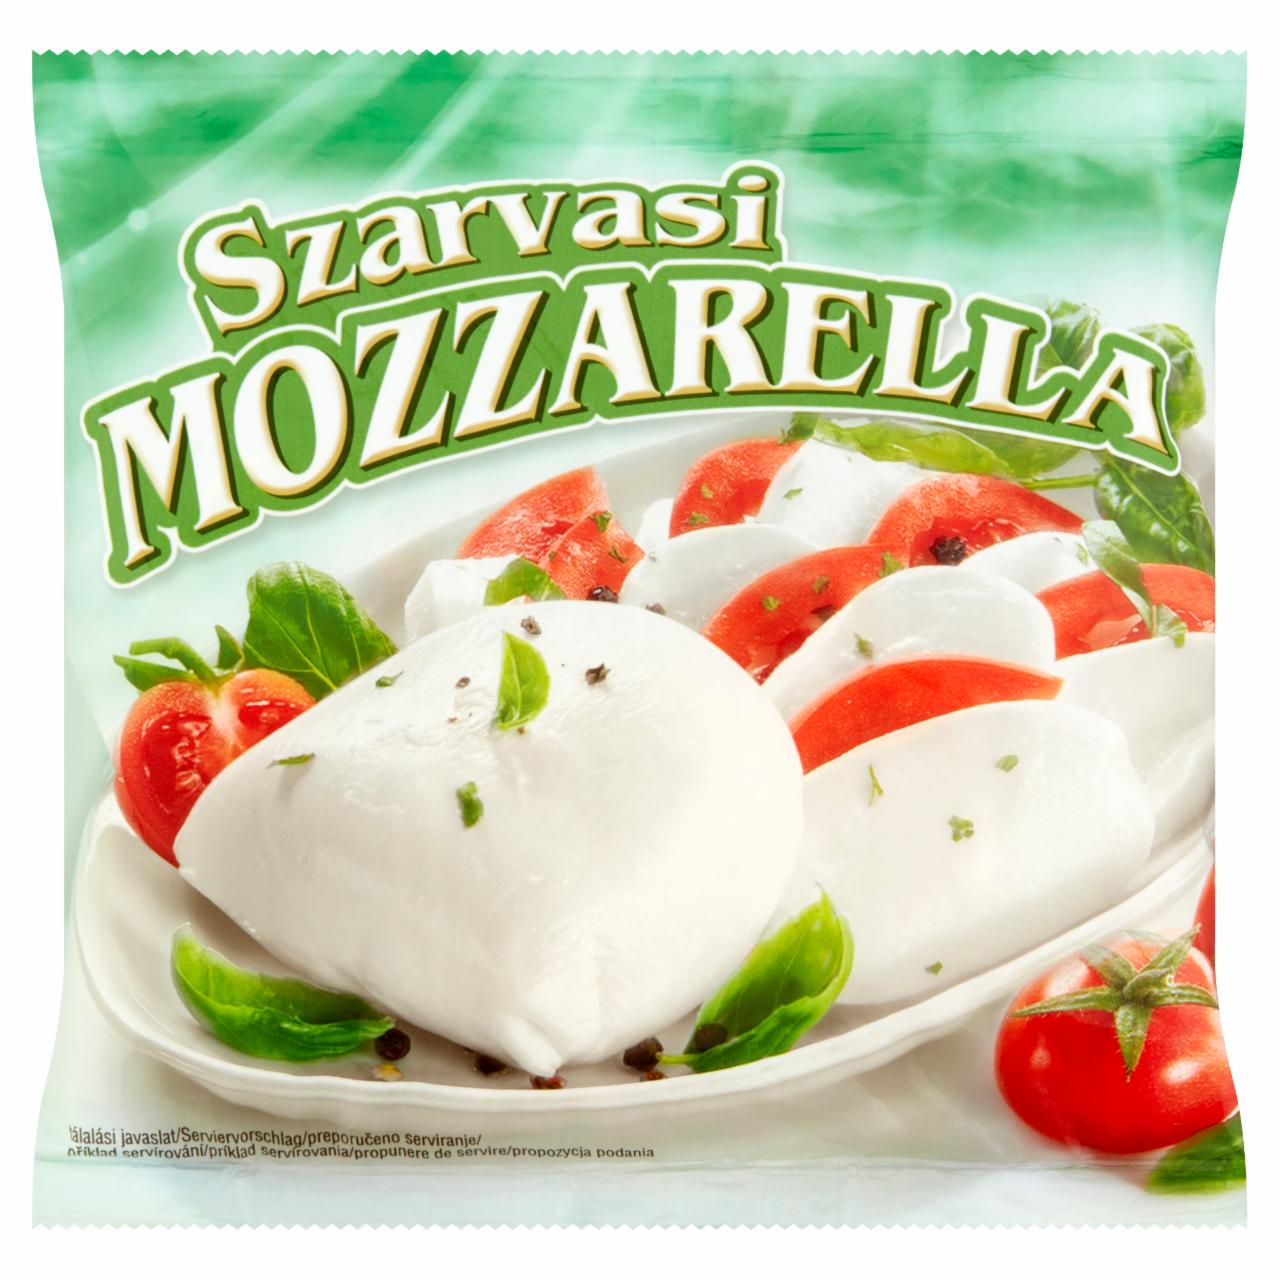 Képek - Mozzarella sajt Szarvasi